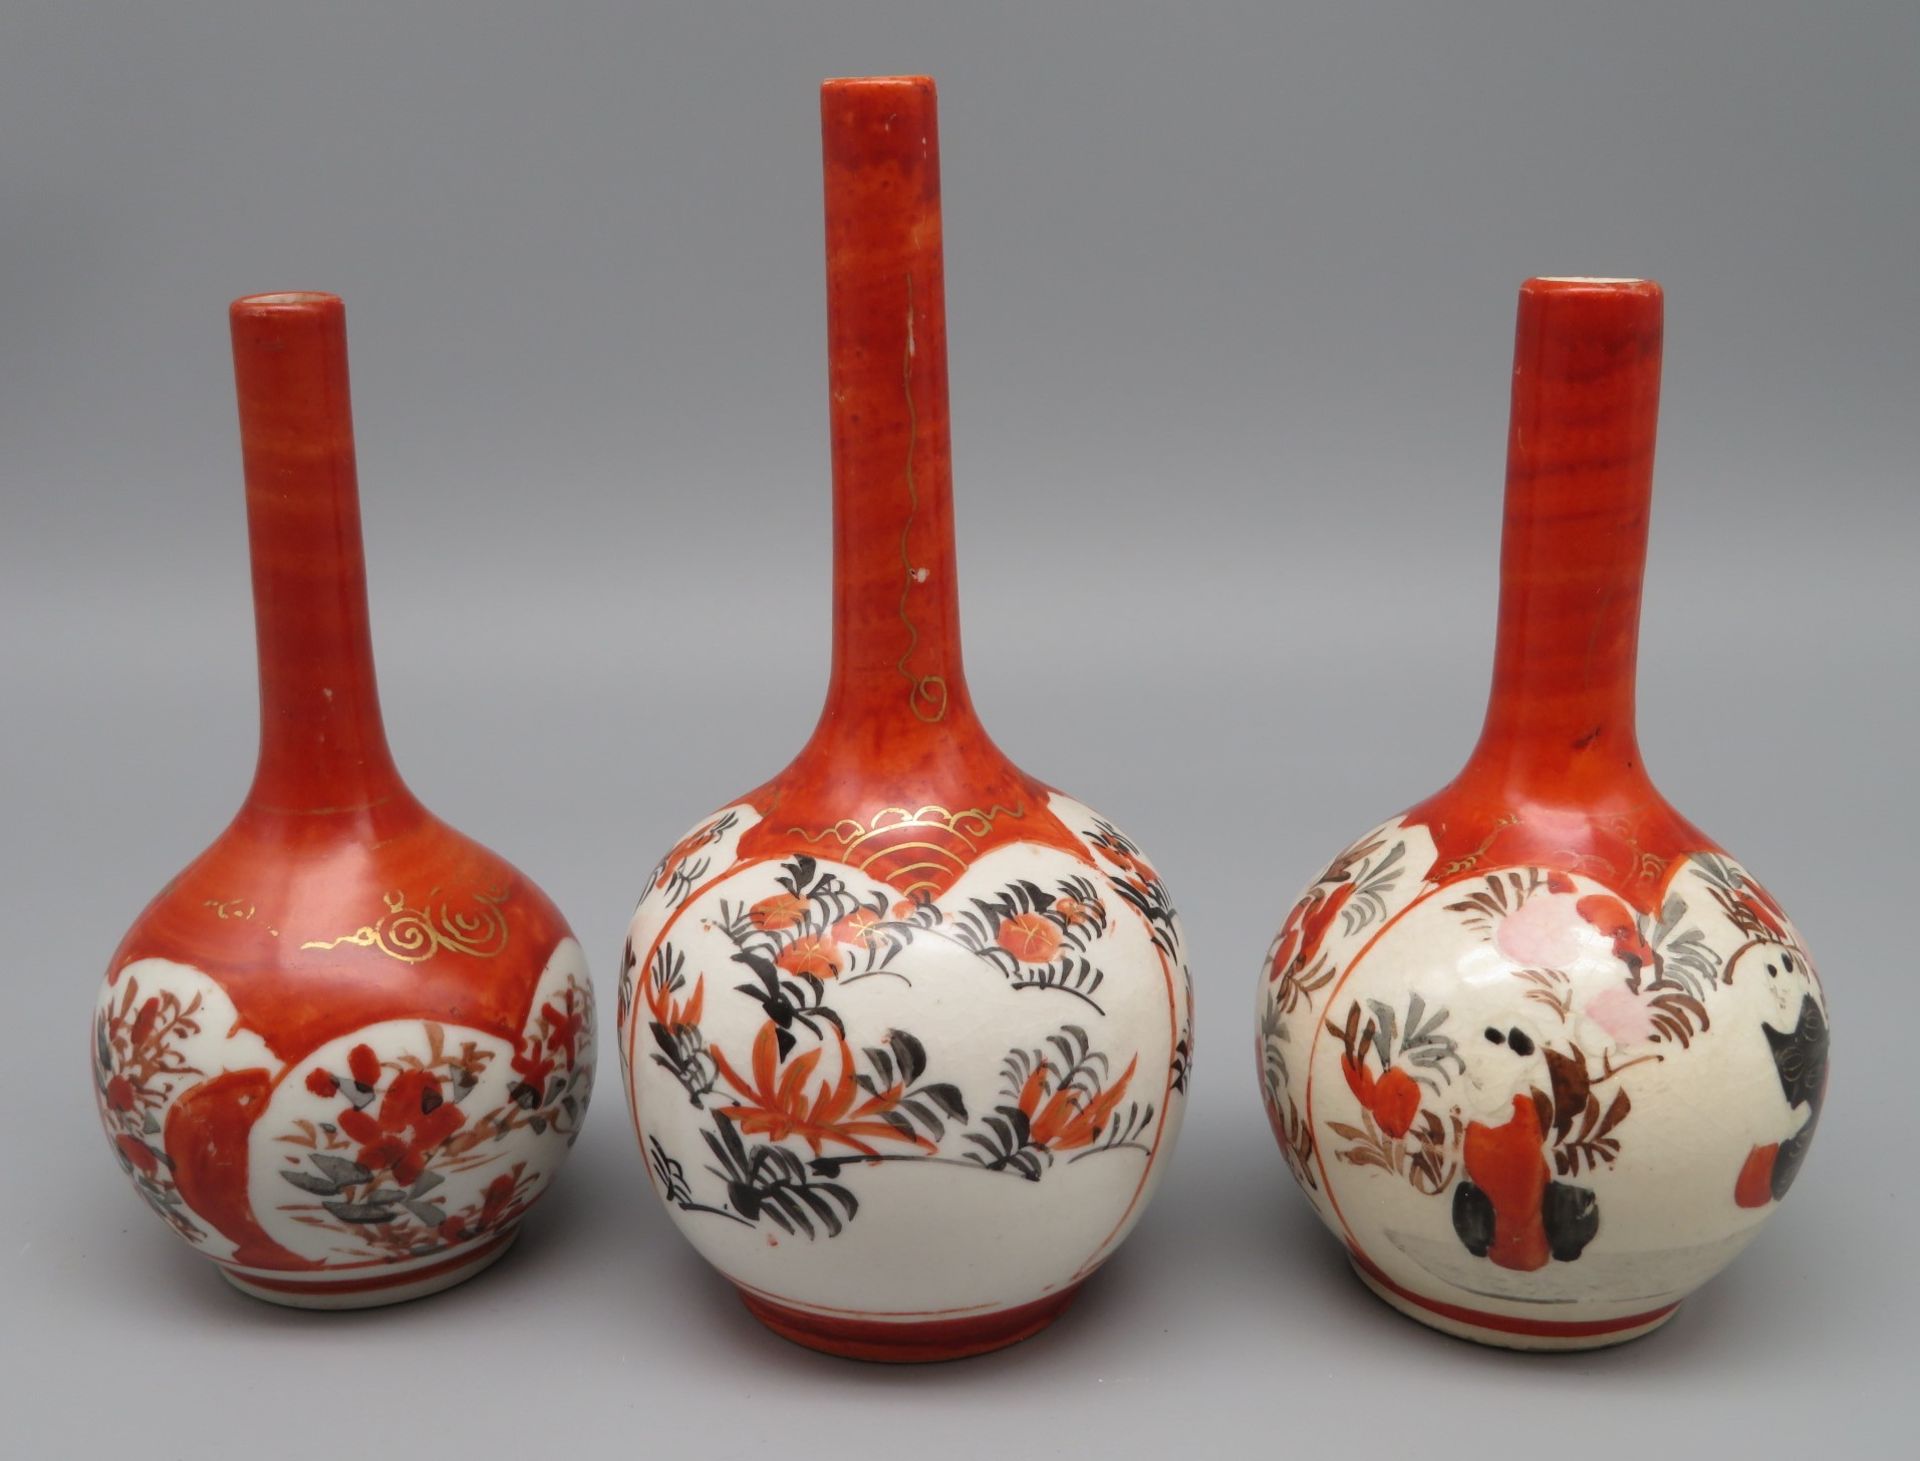 3 Vasen, Japan, Kutani, Weißporzellan mit polychromer Handbemalung von Blüten und Vögeln, Bodensign